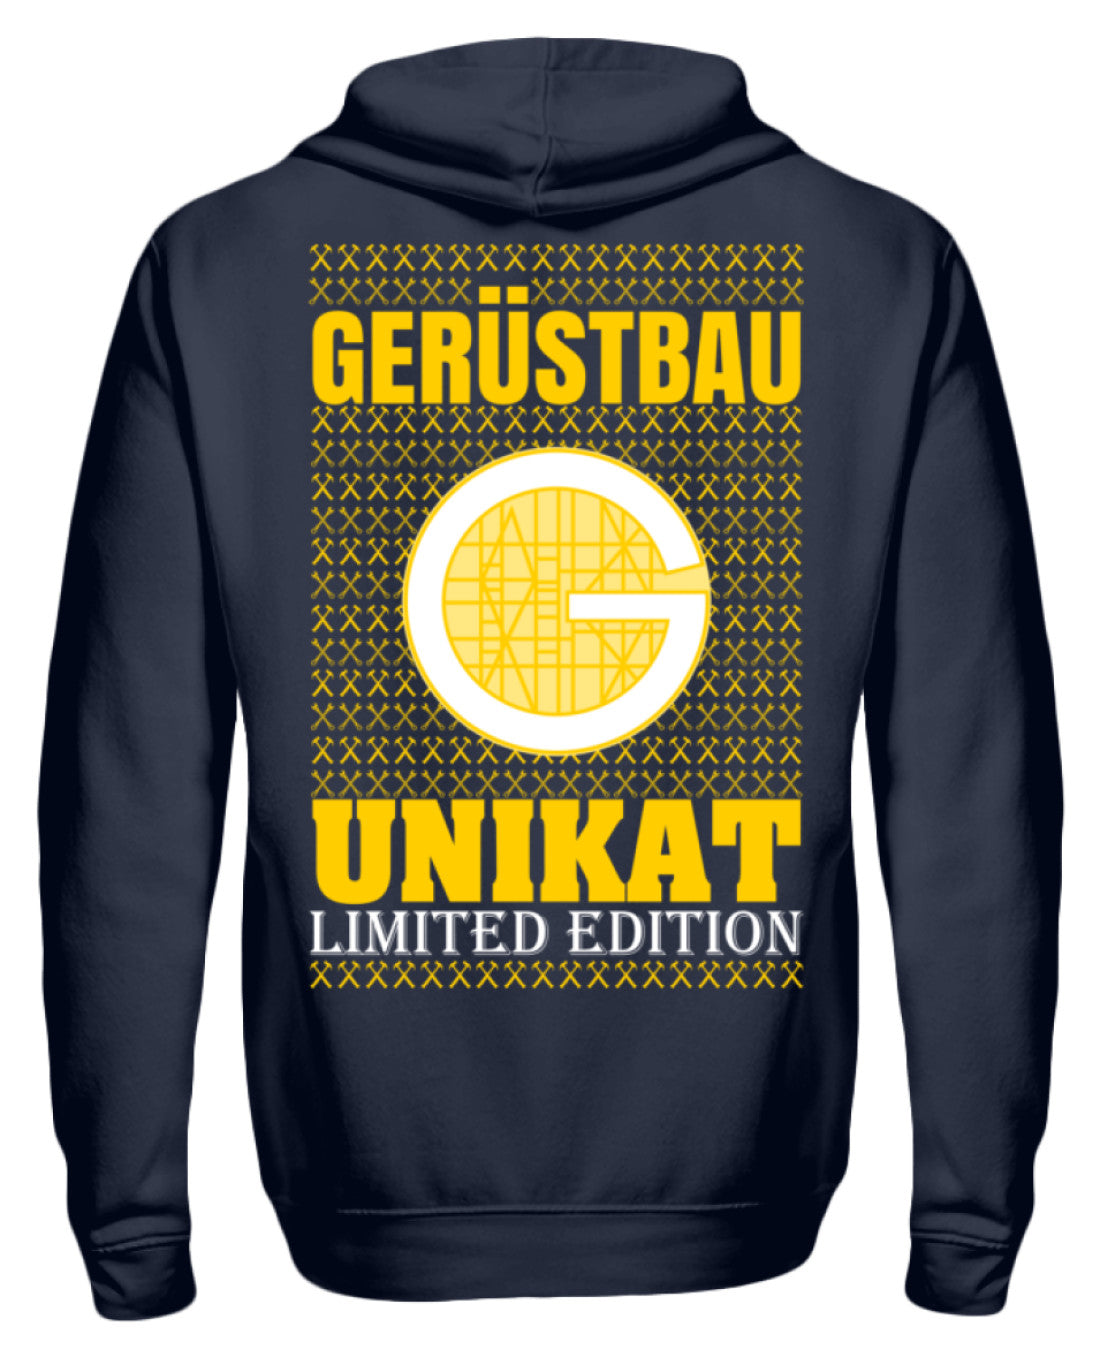 Gerüstbauer Unikat  - Unisex Kapuzenpullover Hoodie €39.95 Gerüstbauer - Shop >>